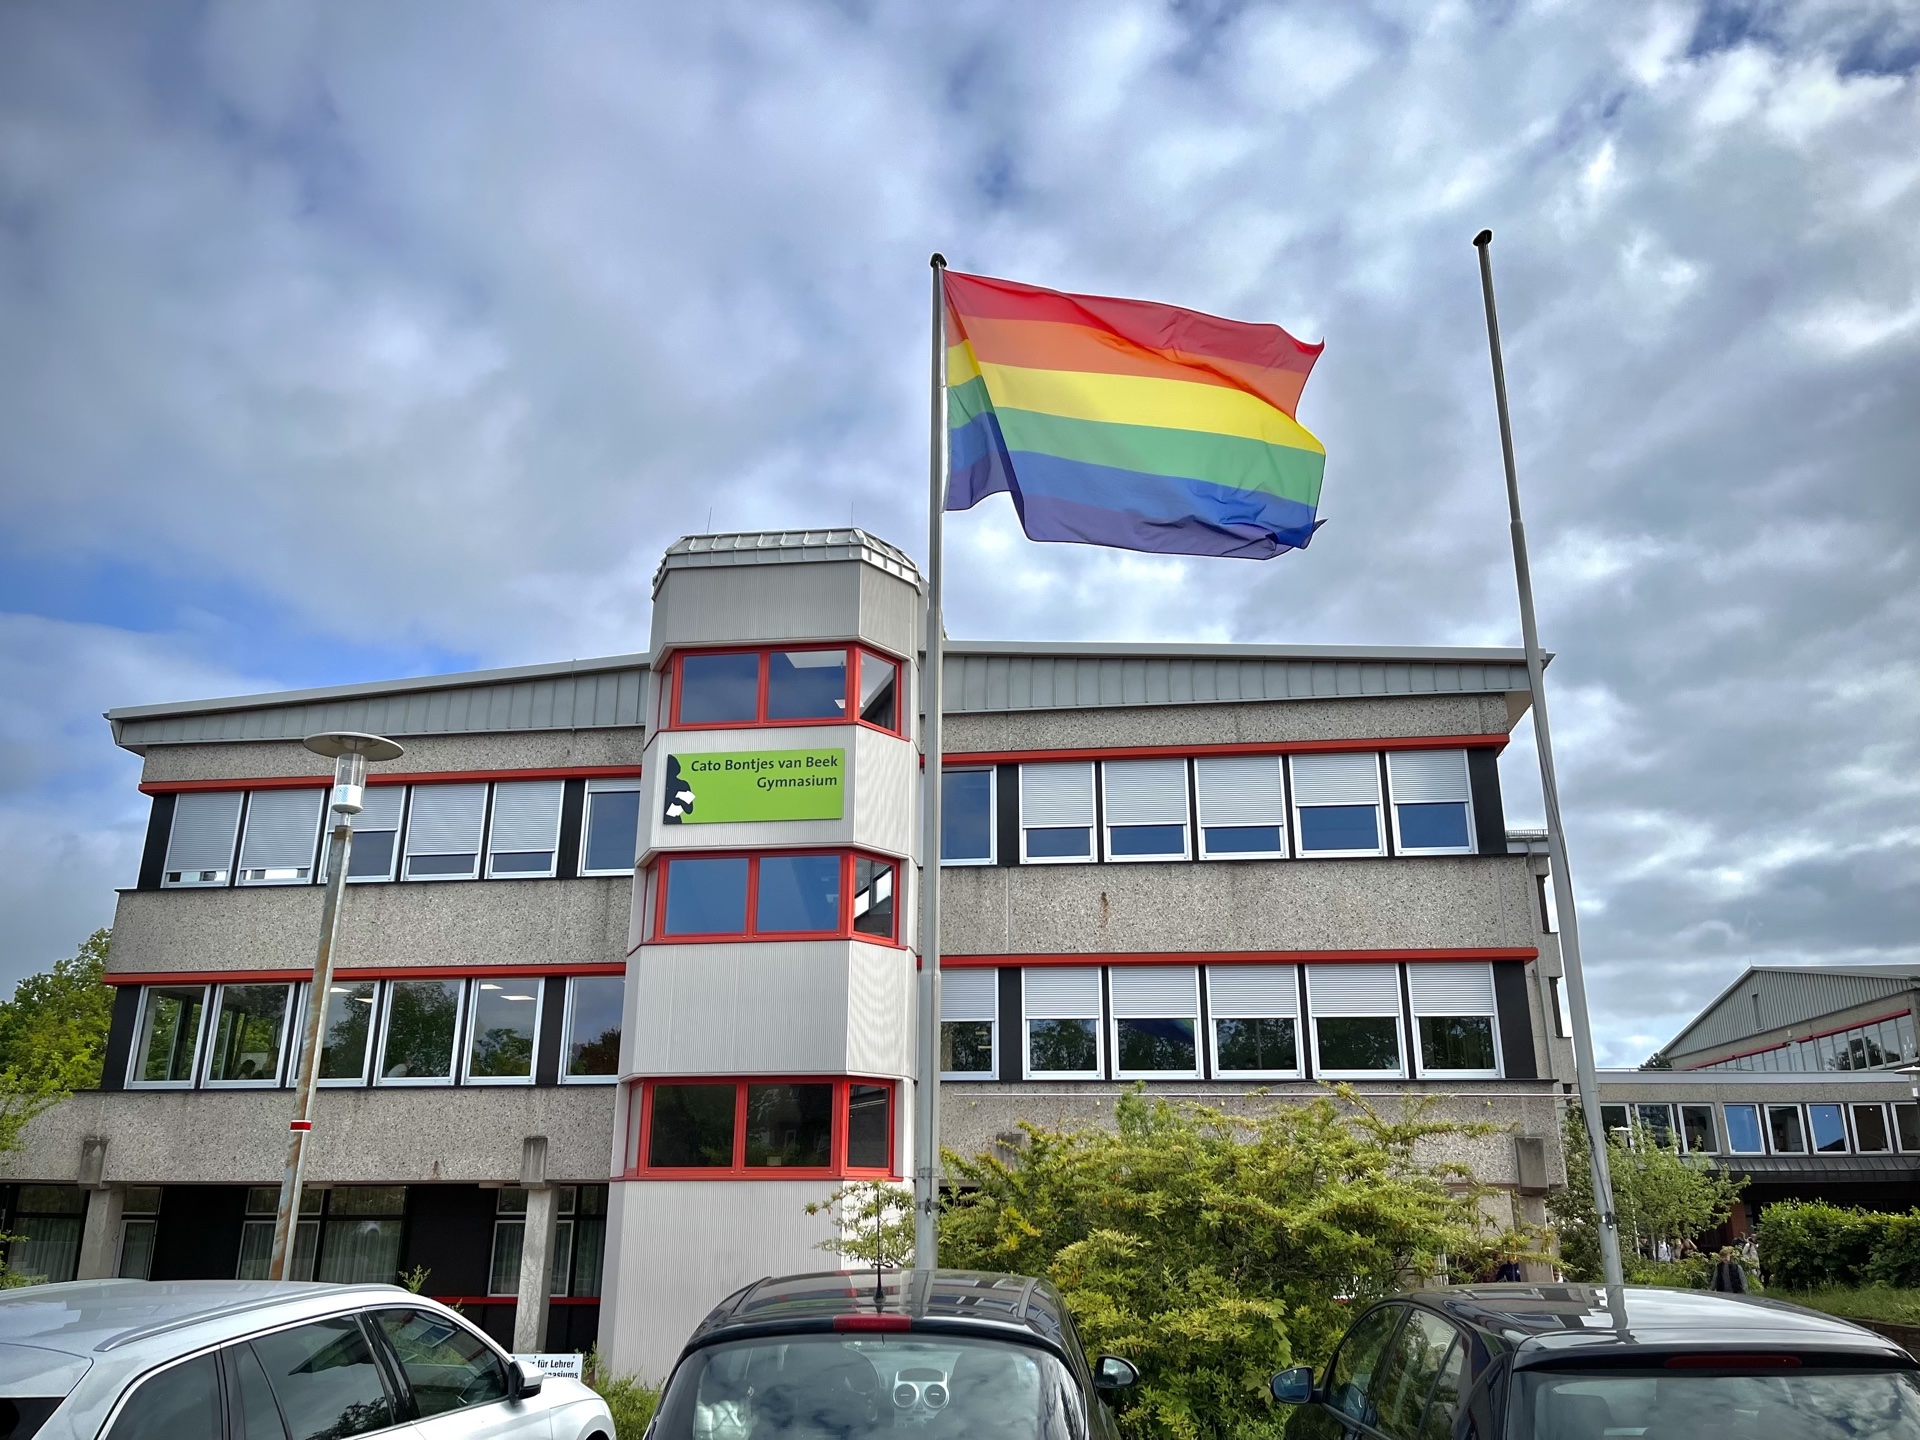 Blick auf die Schule, Regenbogenflagge gehisst